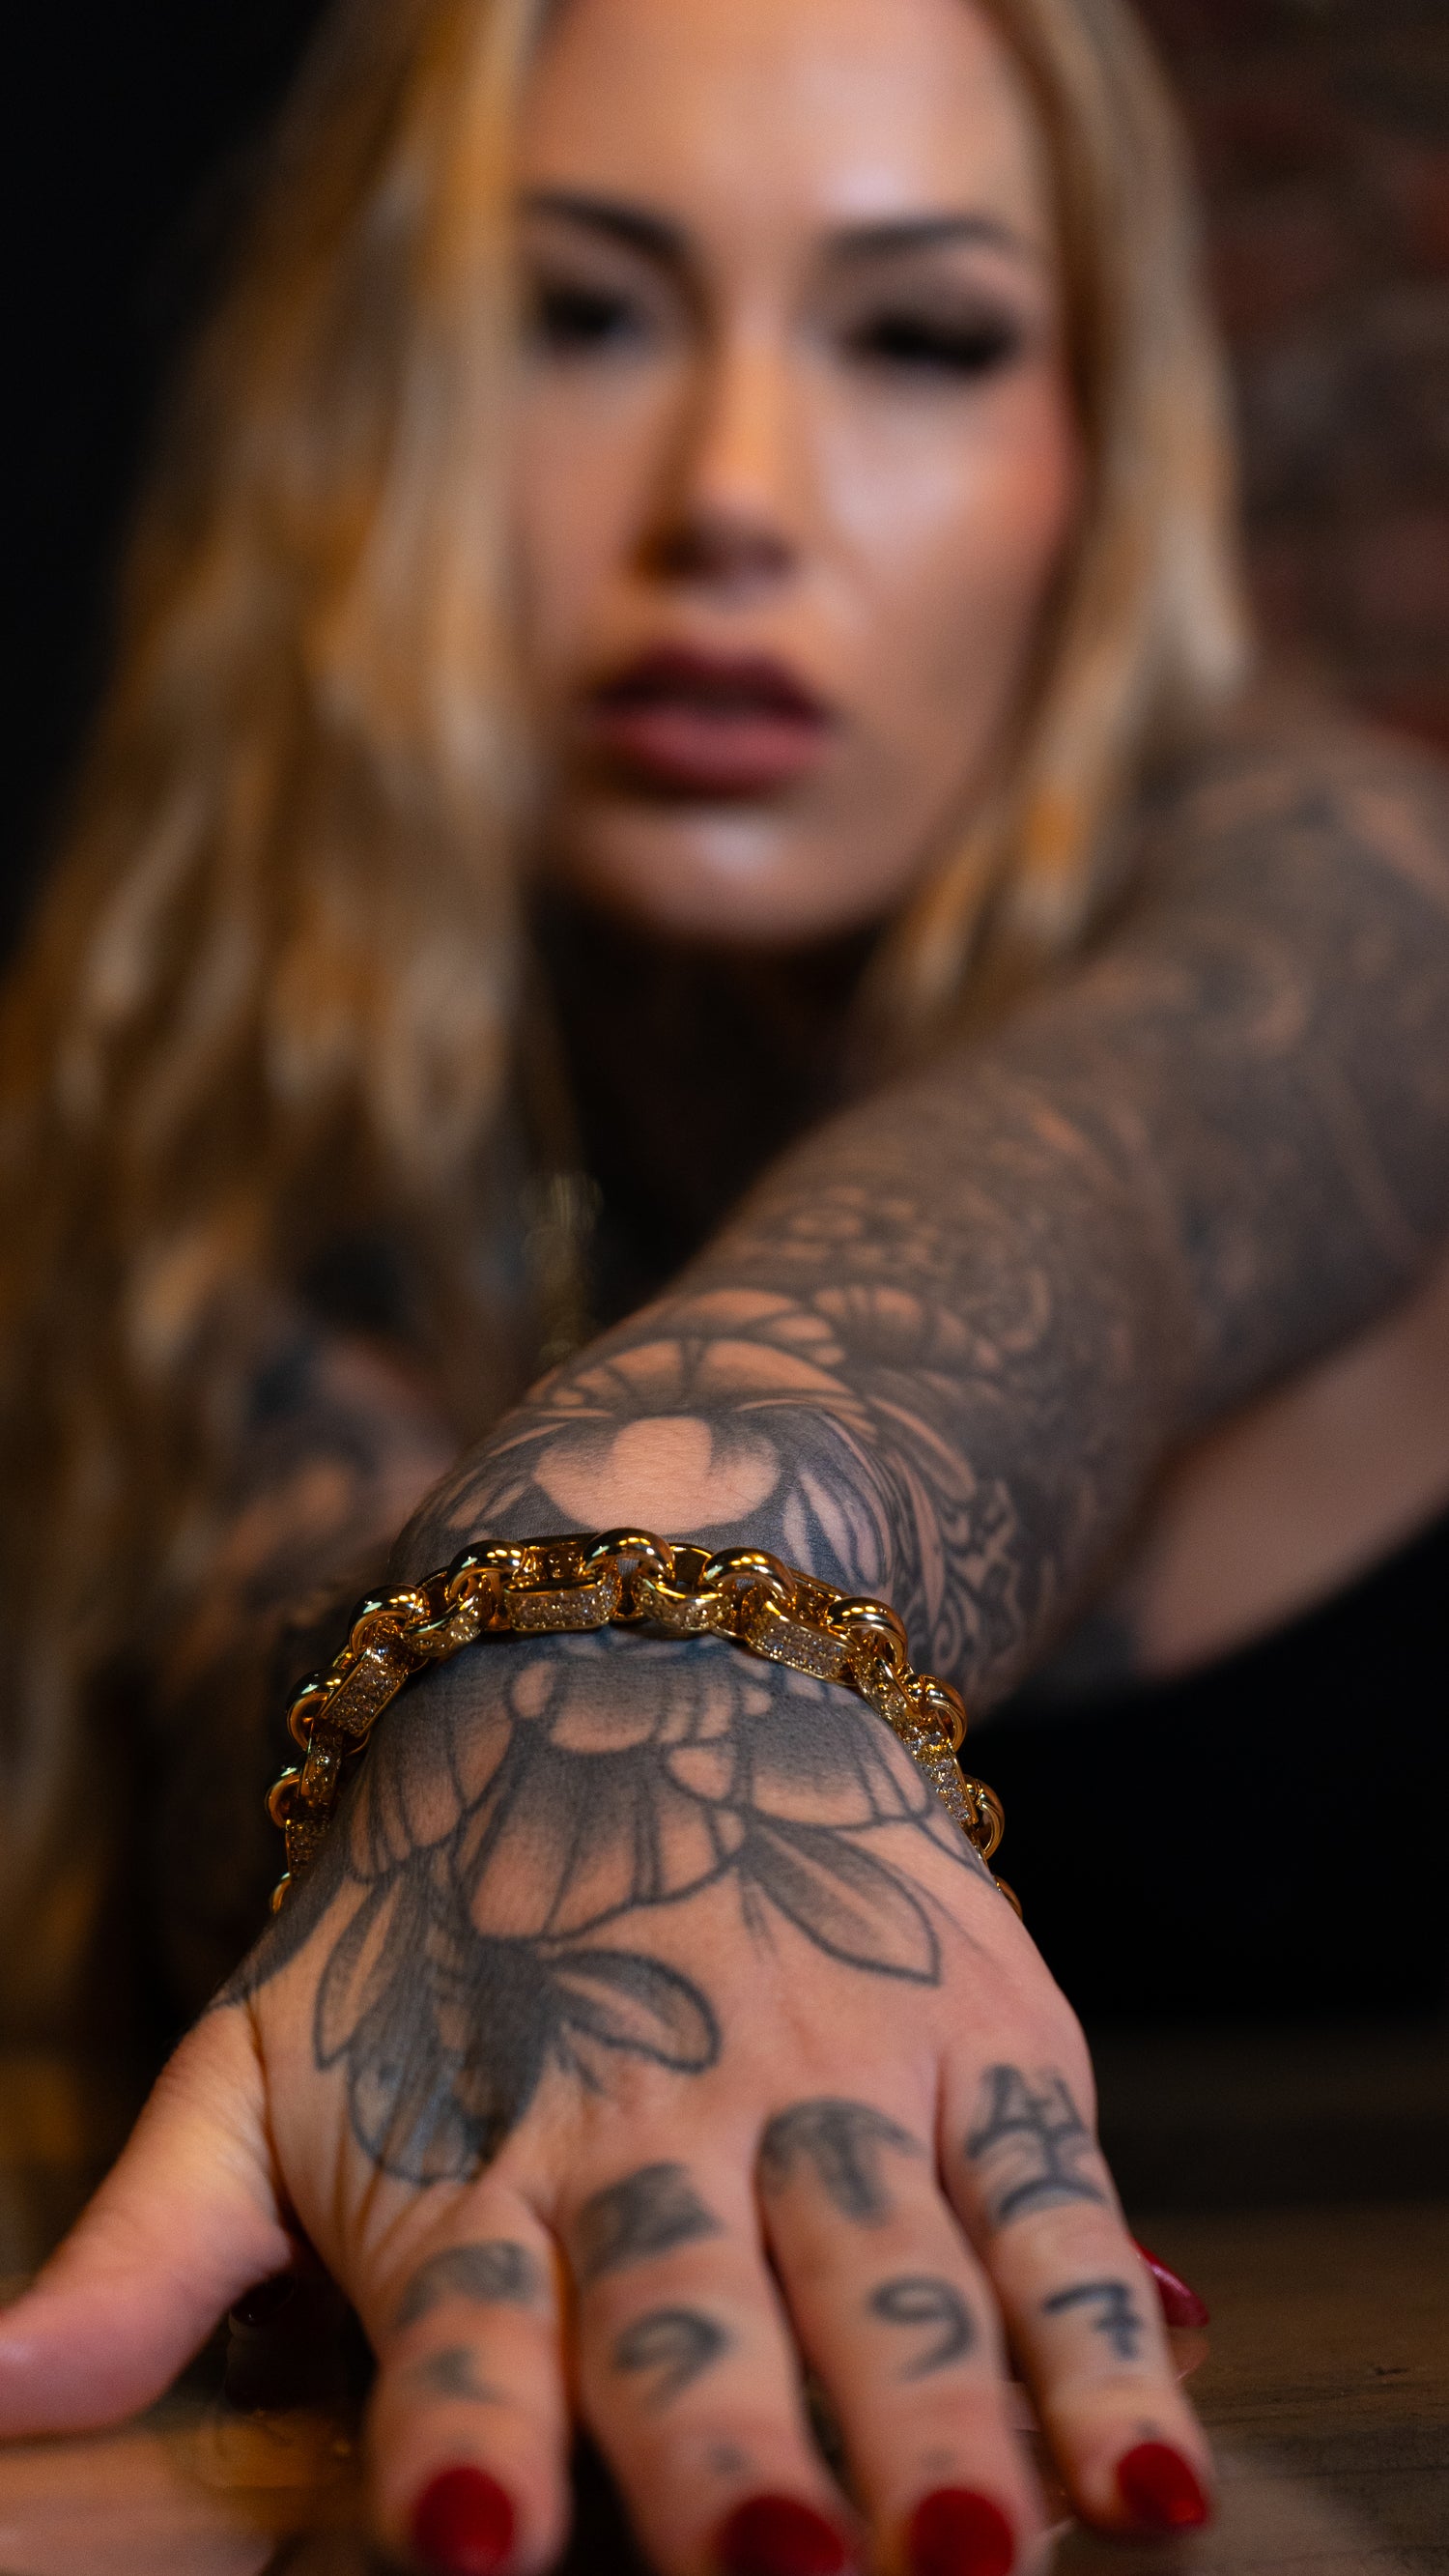 Luxury Gold 10mm 8 inch Gypsy Link Belcher Bracelet